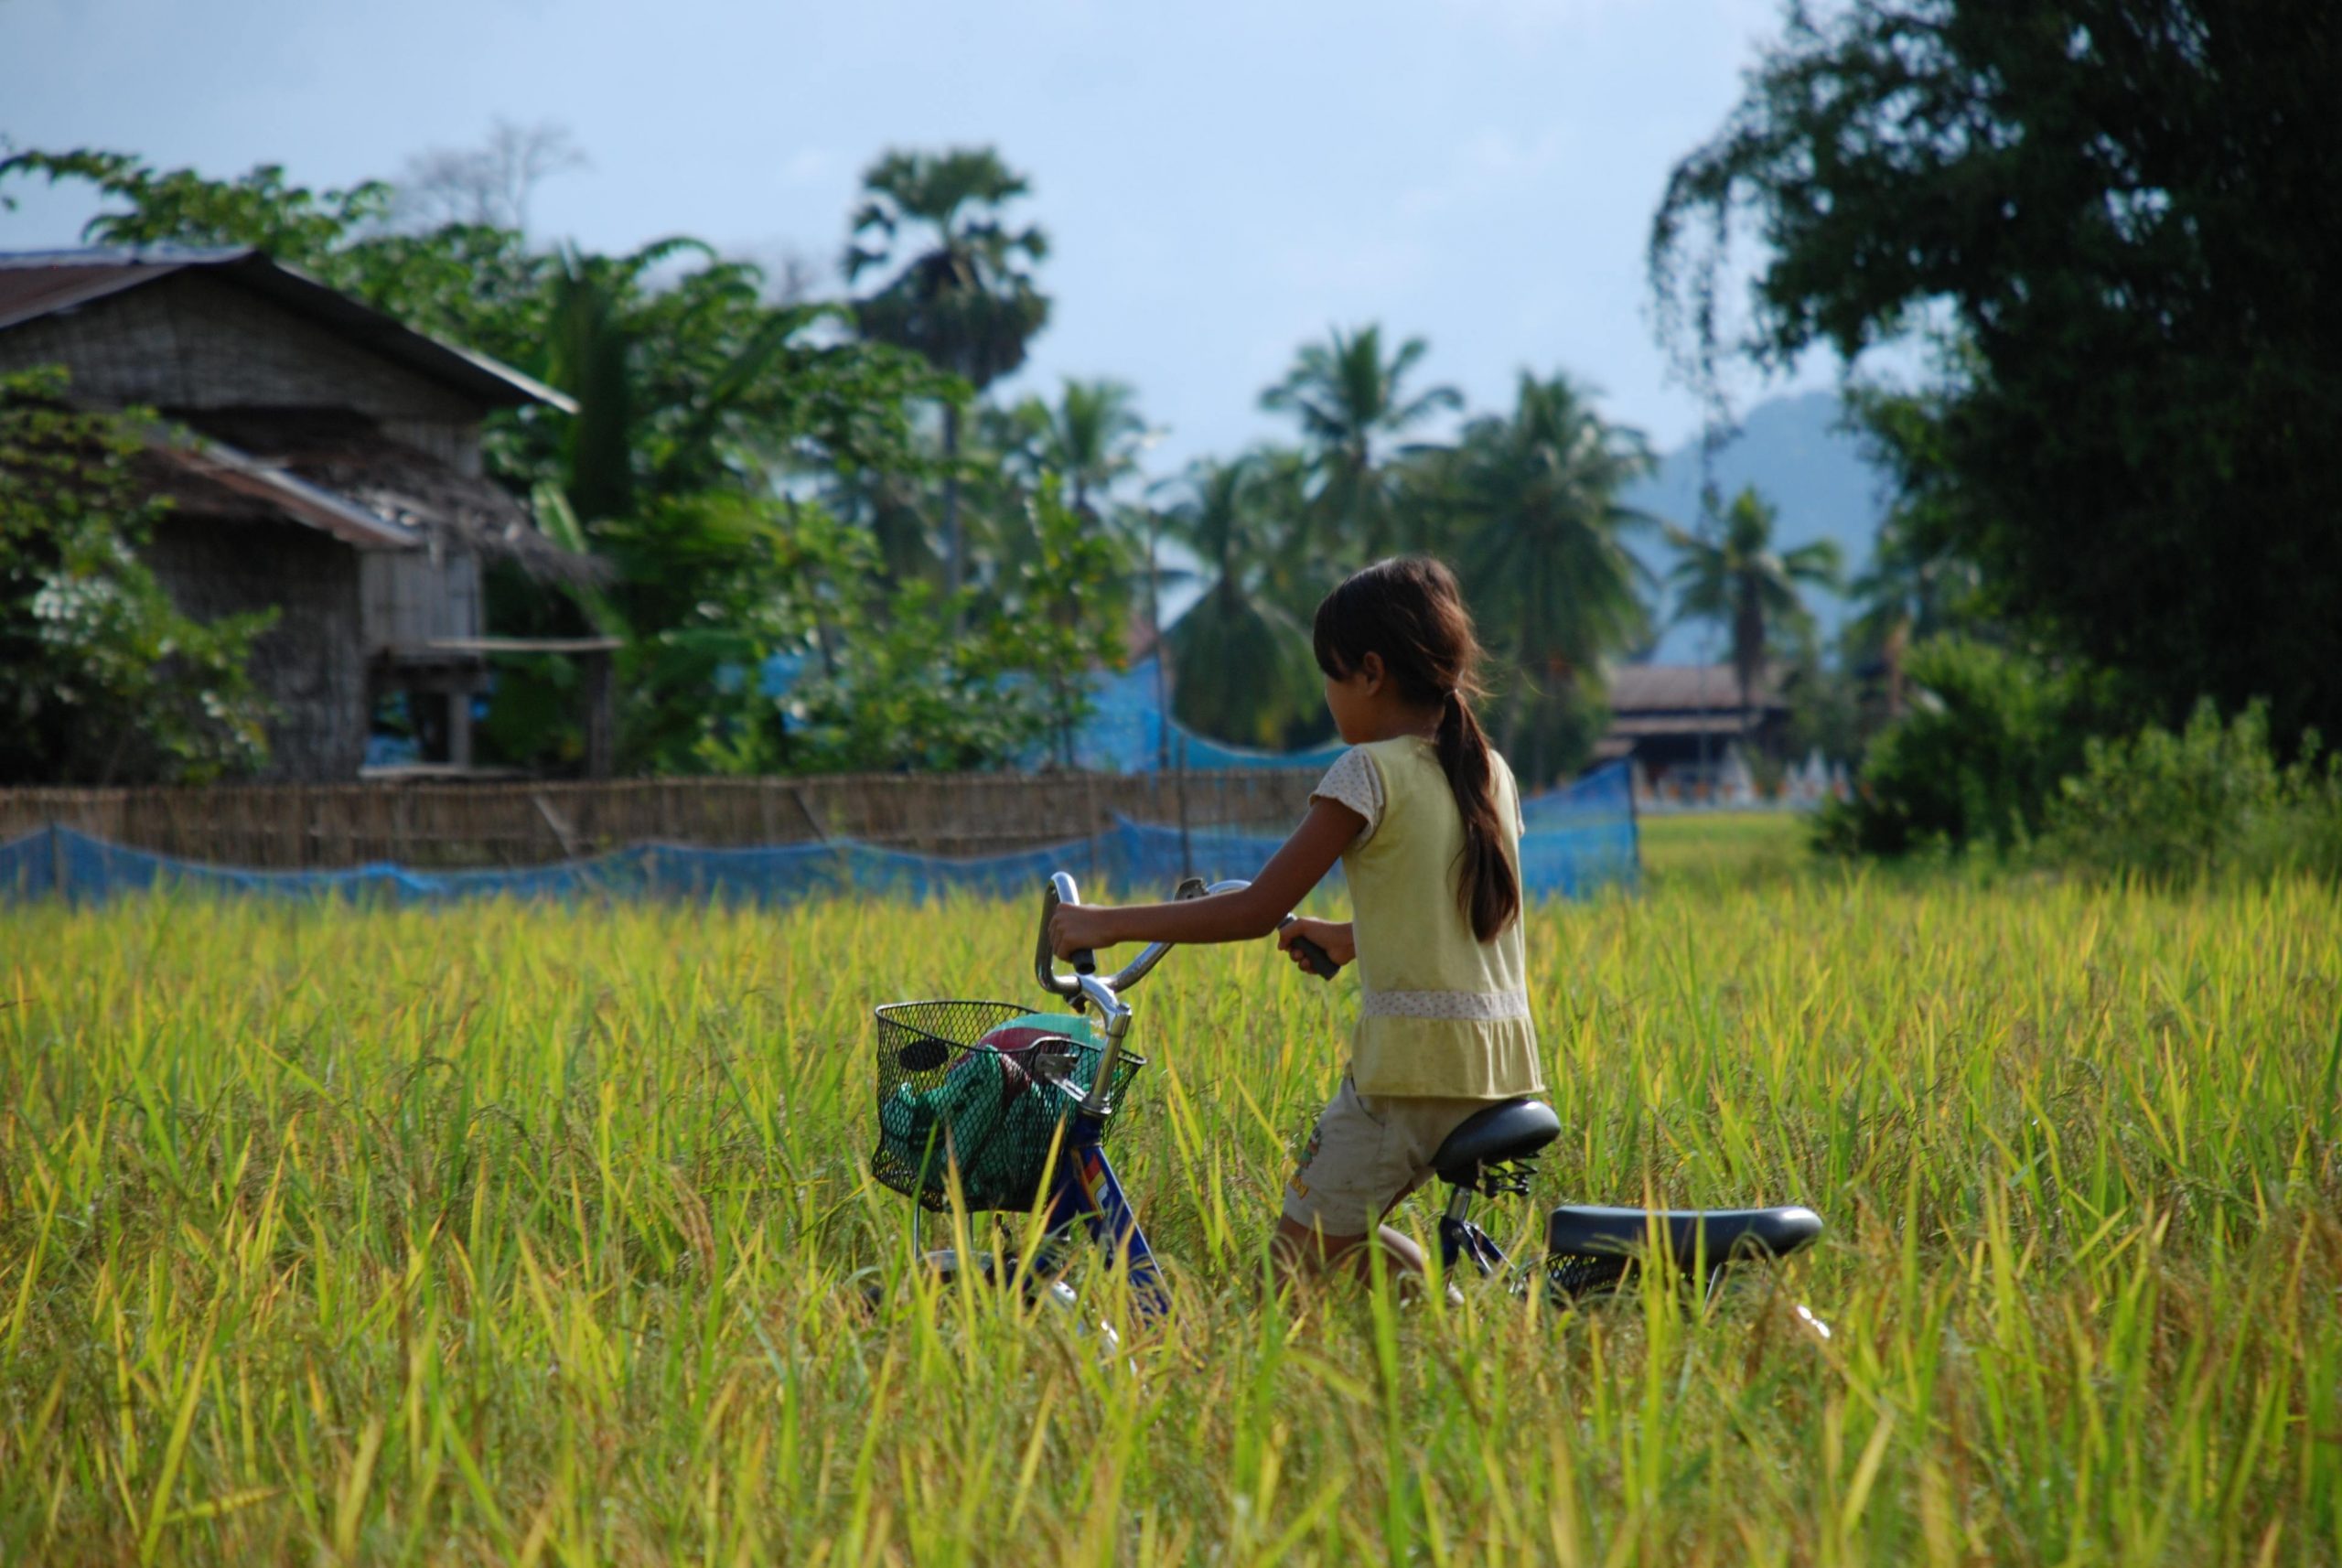 Tyttö pyöräilee pellolla.